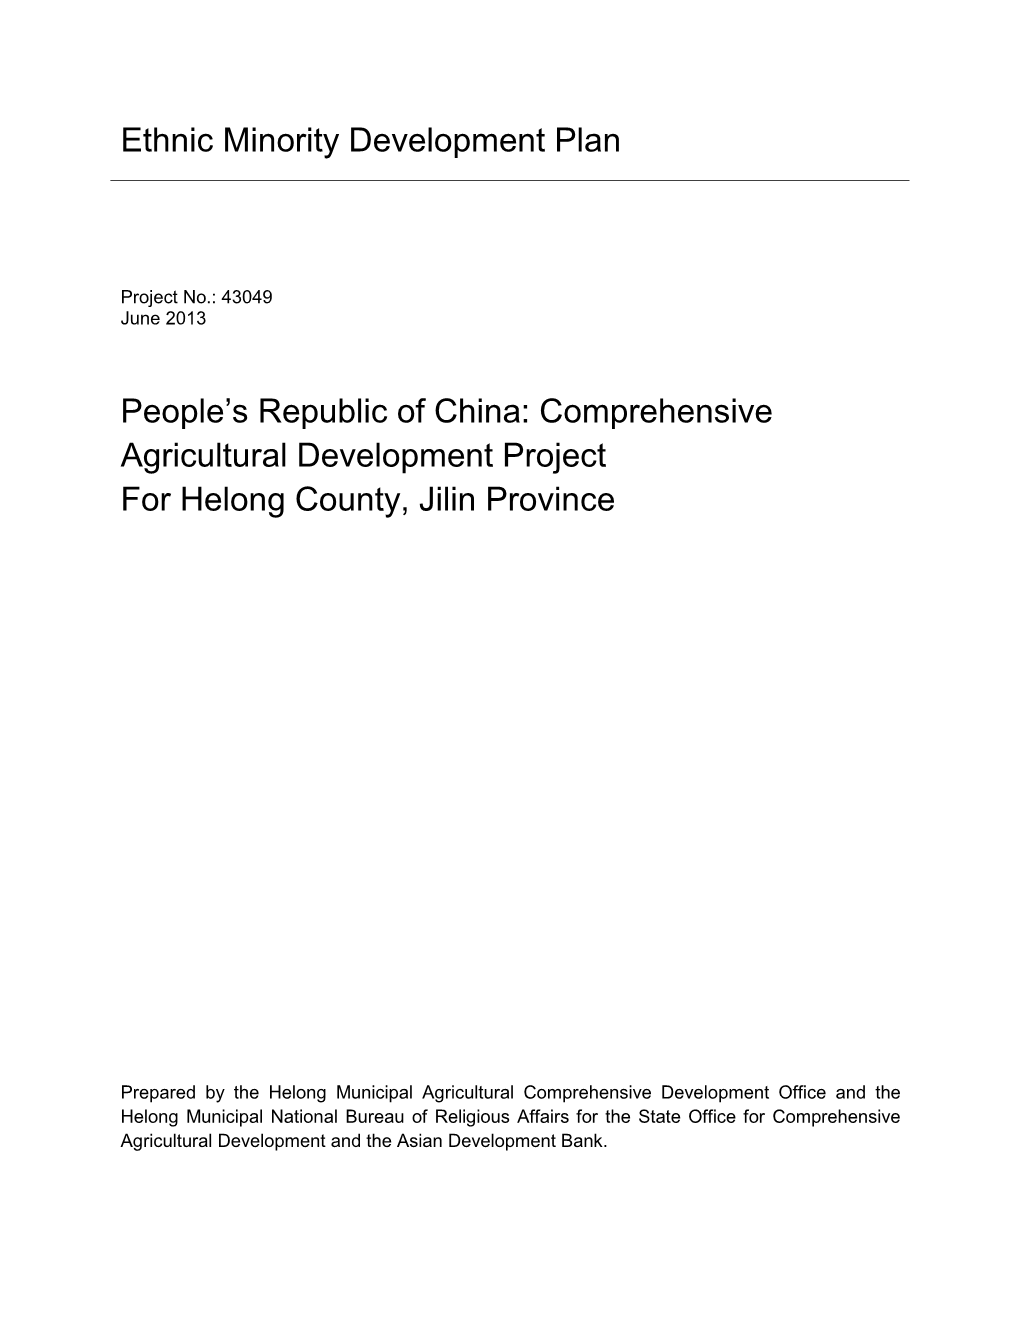 43049-013: Helong County, Jilin Province Ethnic Minority